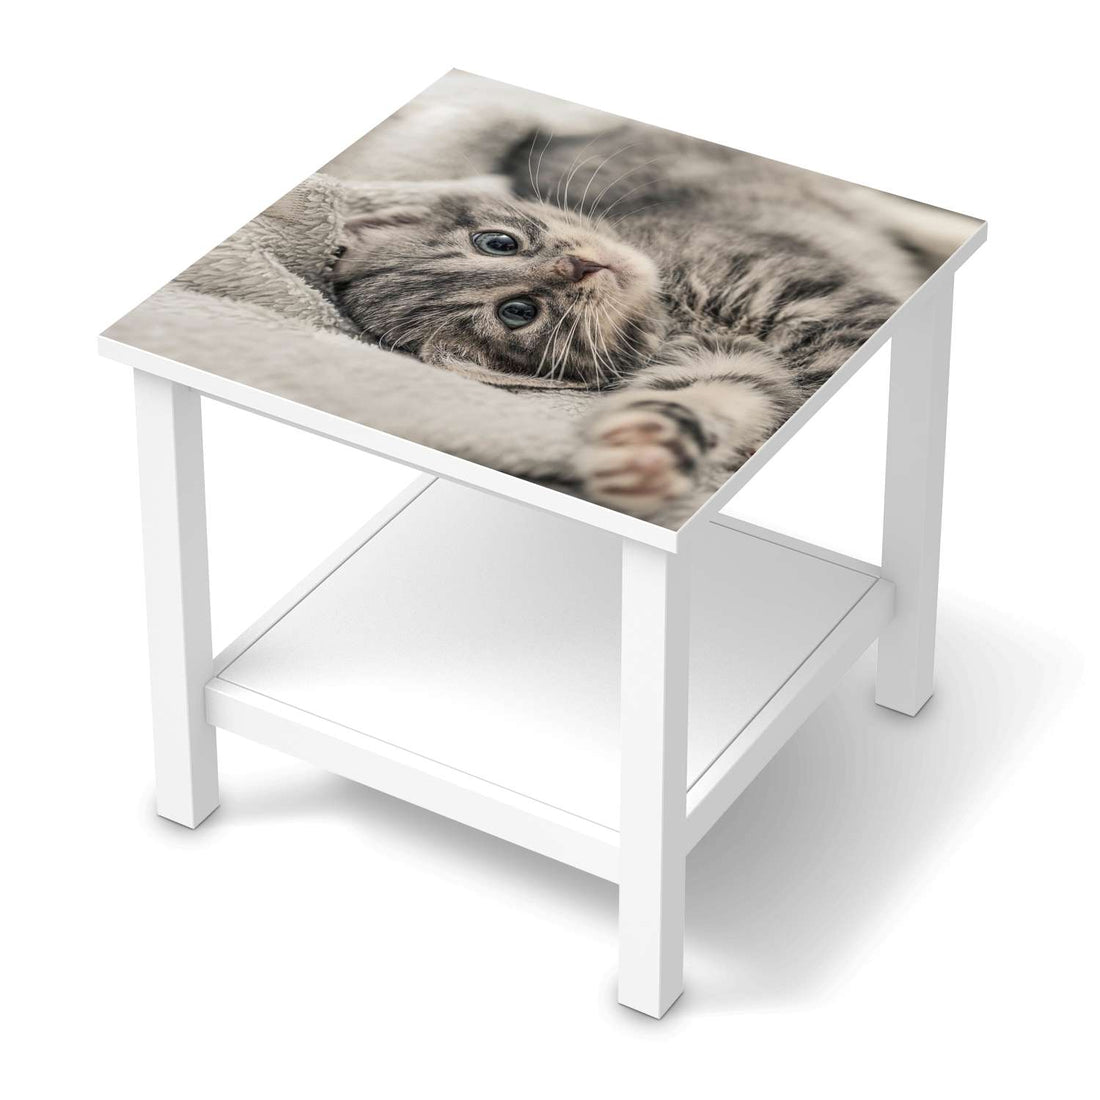 Möbel Klebefolie Kitty the Cat - IKEA Hemnes Beistelltisch 55x55 cm  - weiss